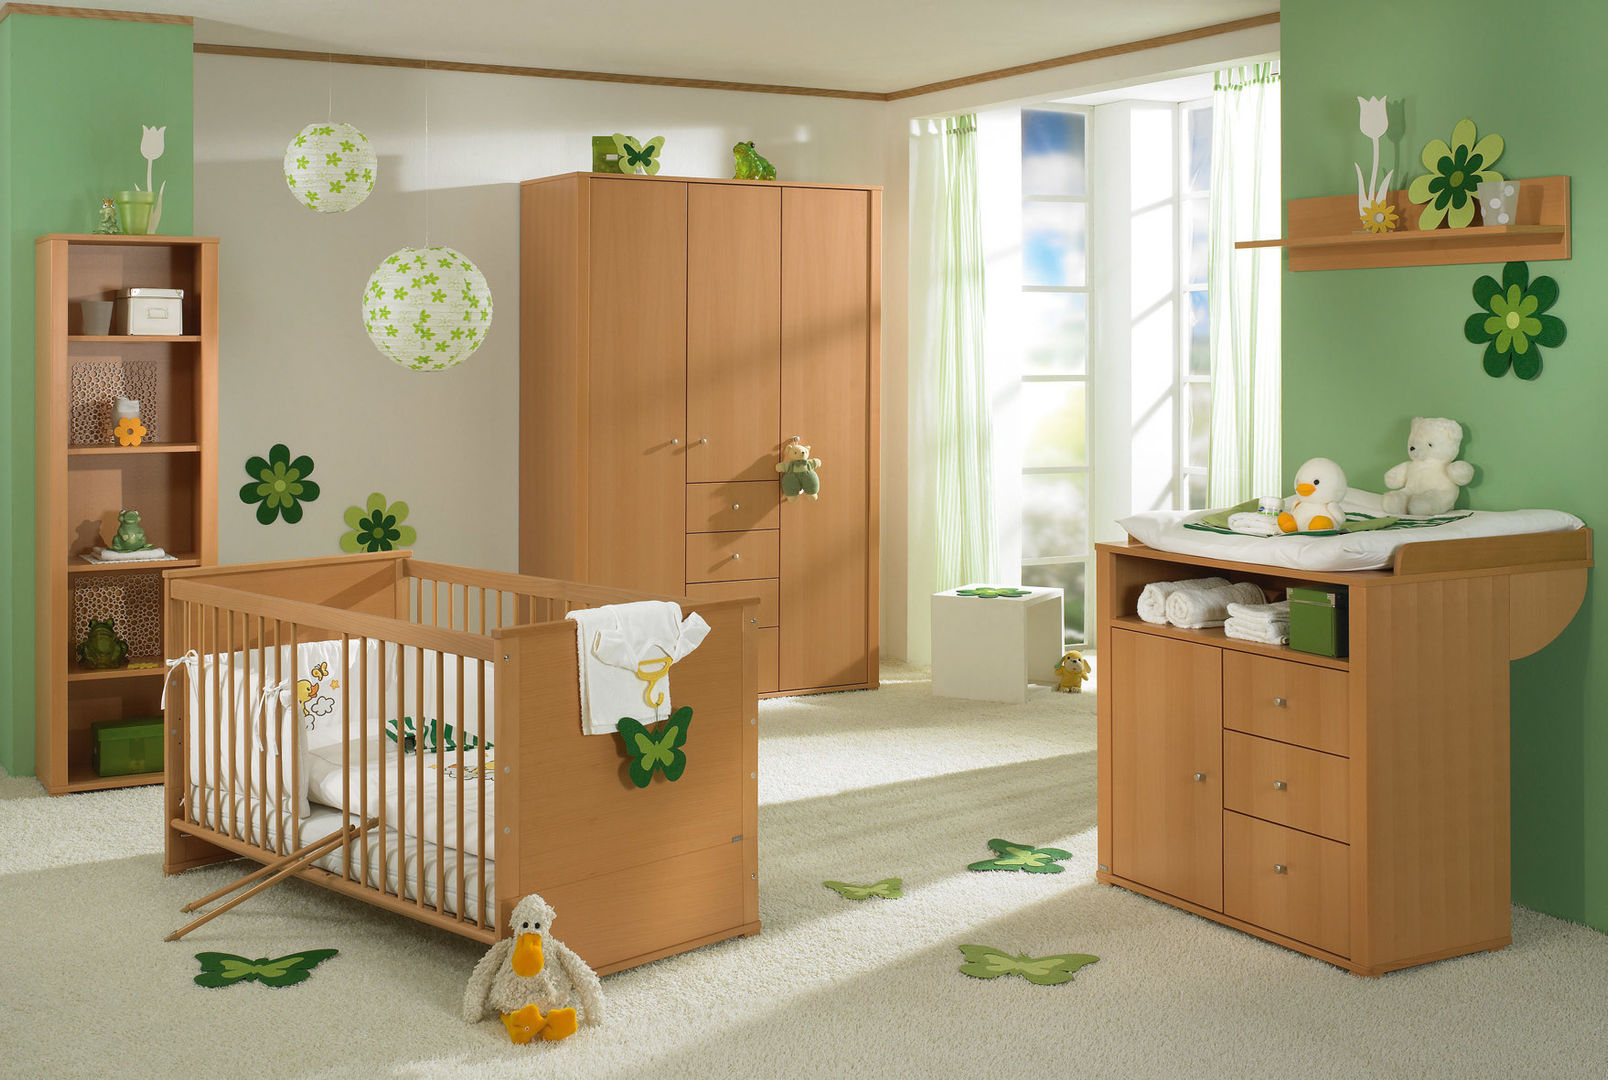 Spielwelten für Kinder, Paidi Paidi غرفة الاطفال Beds & cribs